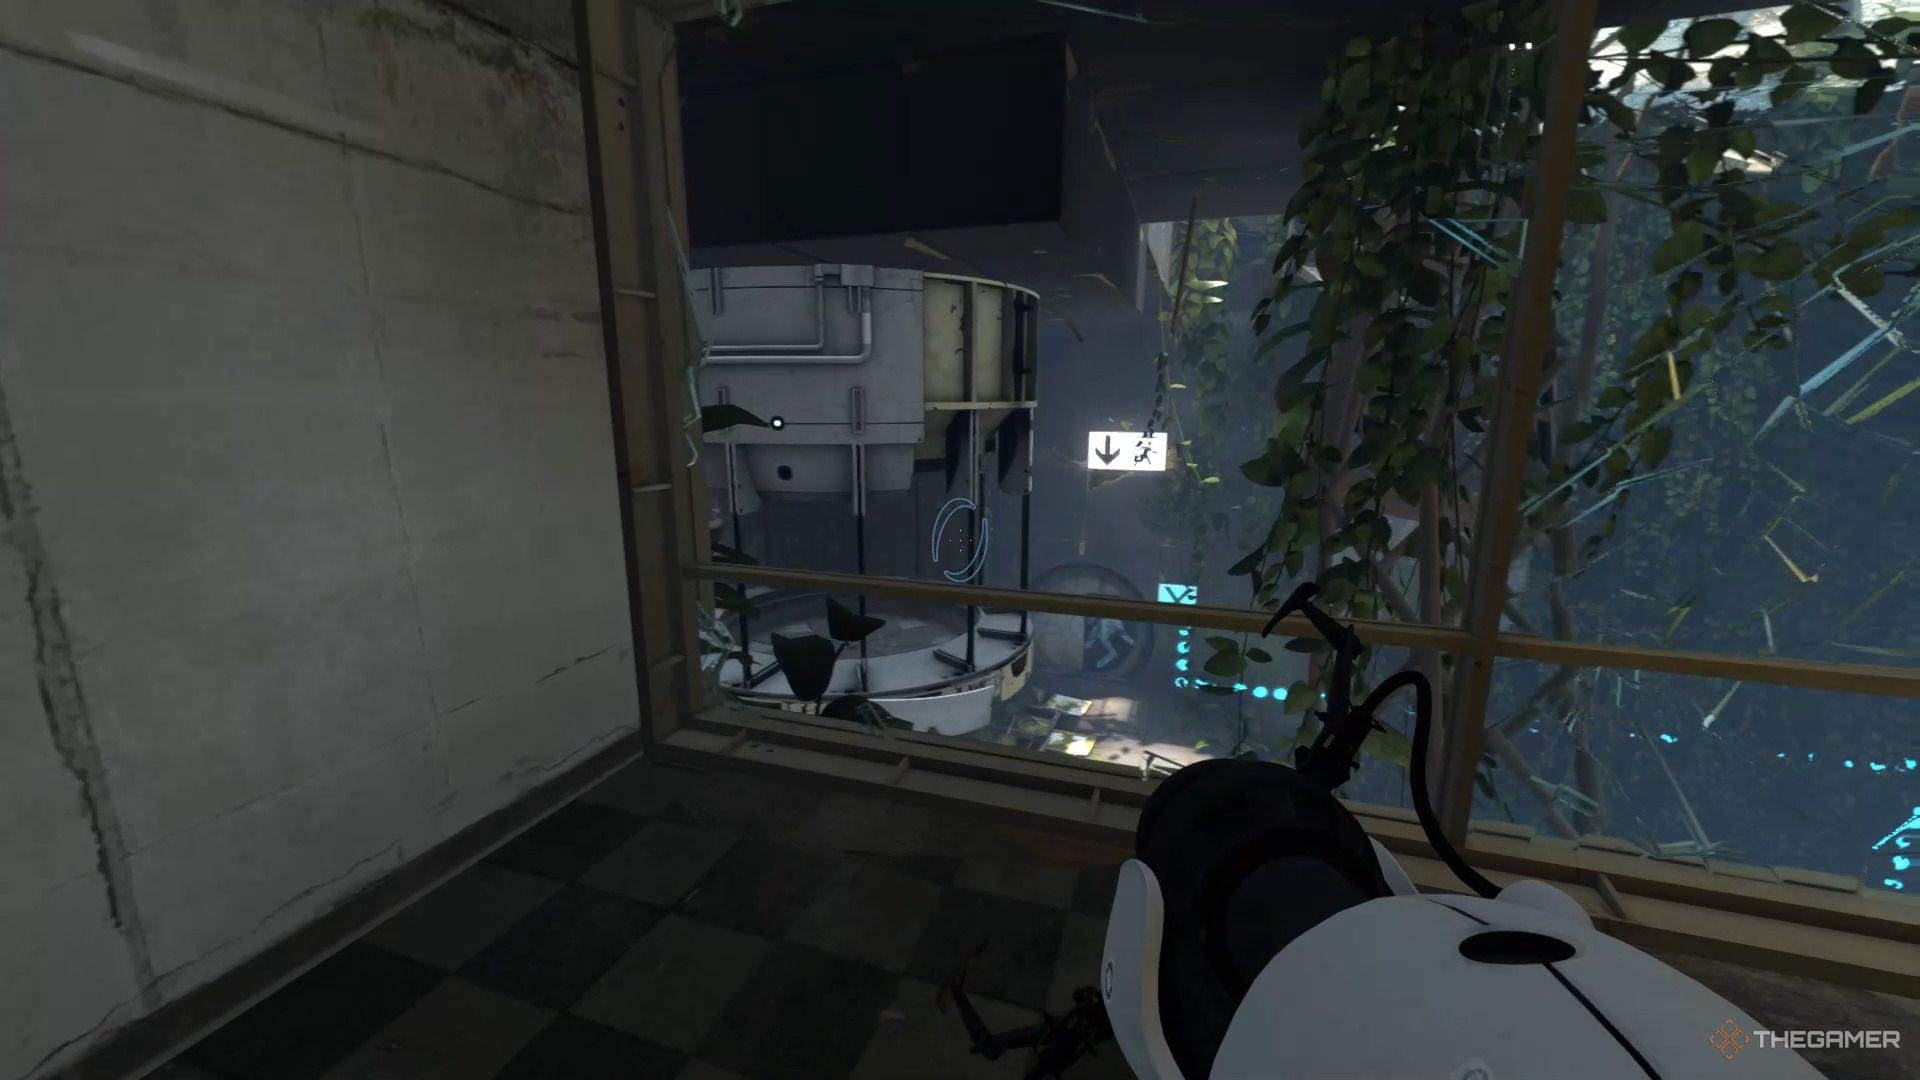 Ein Screenshot von Portal Revolution, der den Spielercharakter zeigt, der durch eine Fensterscheibe ohne Glas schaut